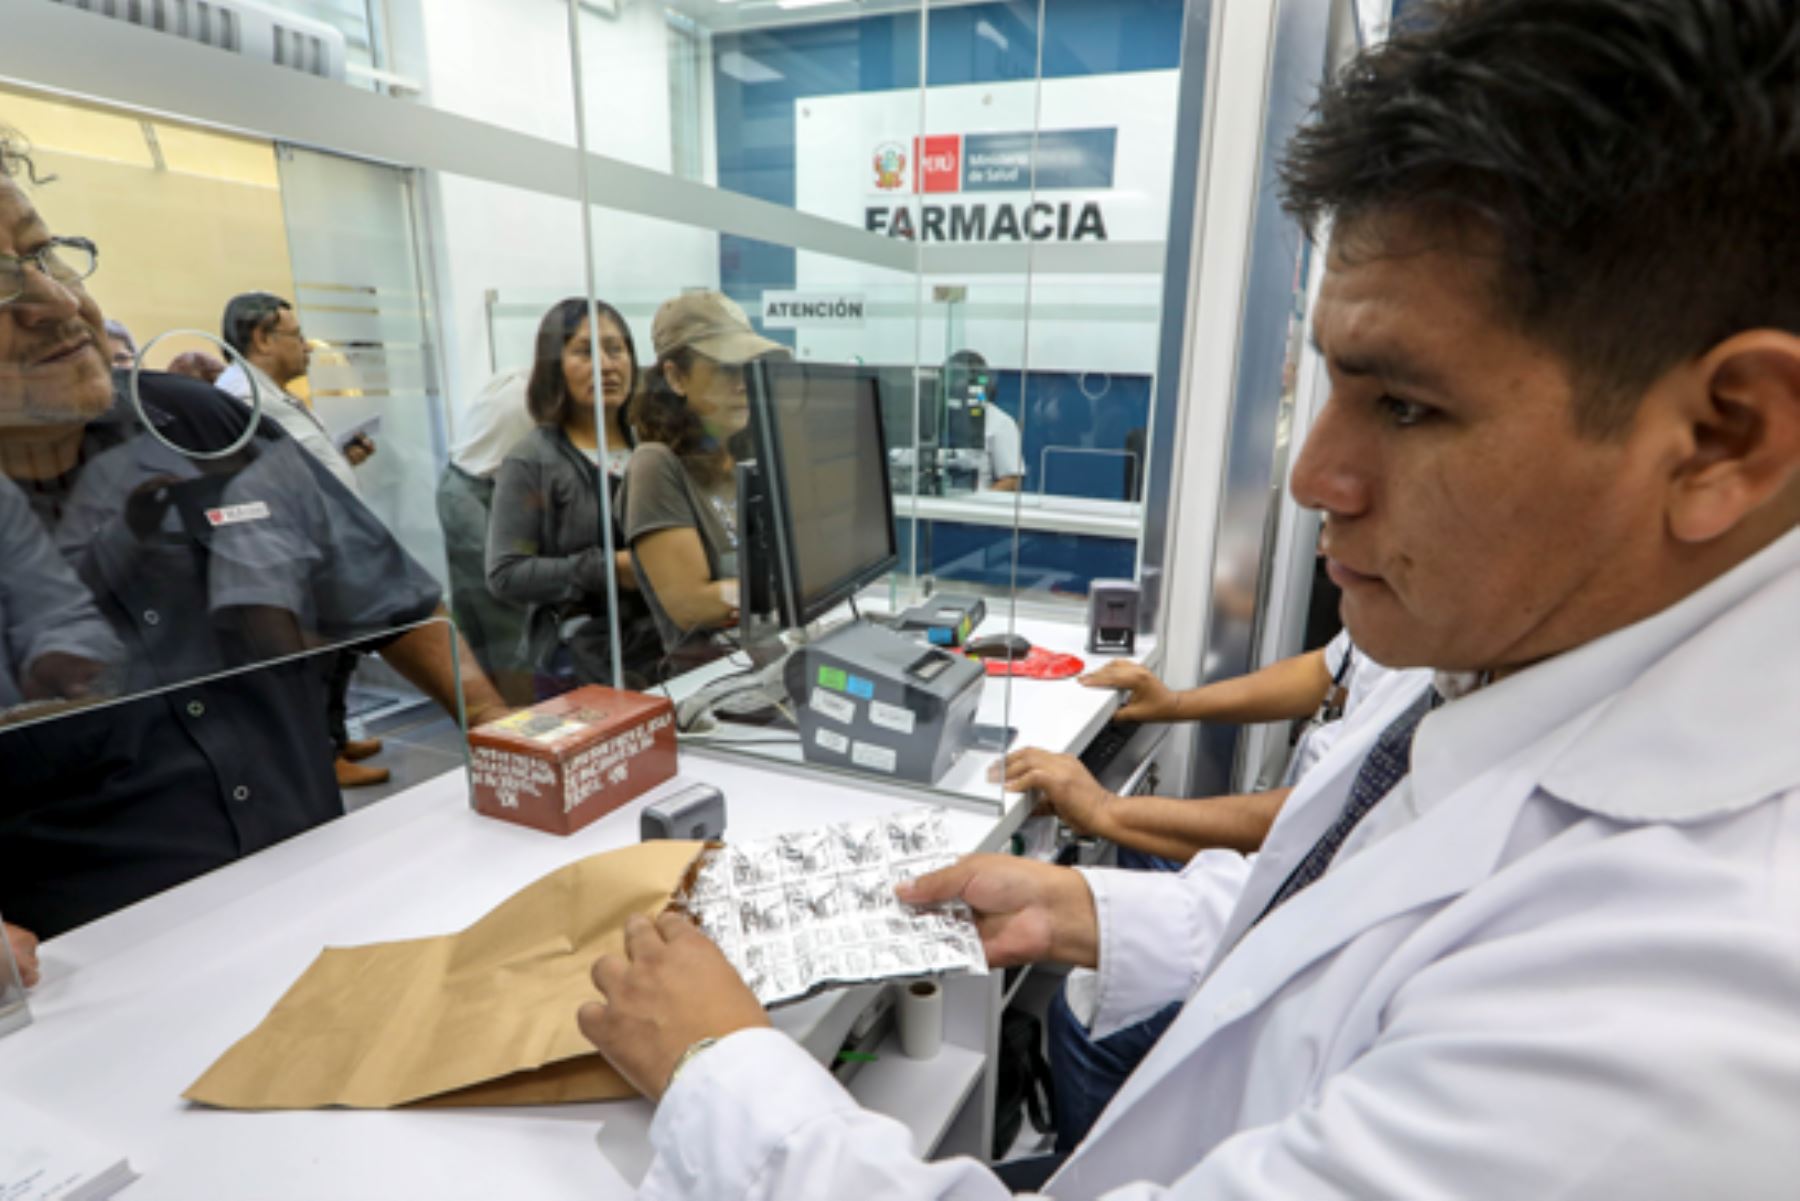 Minsa inaugura farmacia ecoeficiente en su sede central. Foto: ANDINA/Difusión.